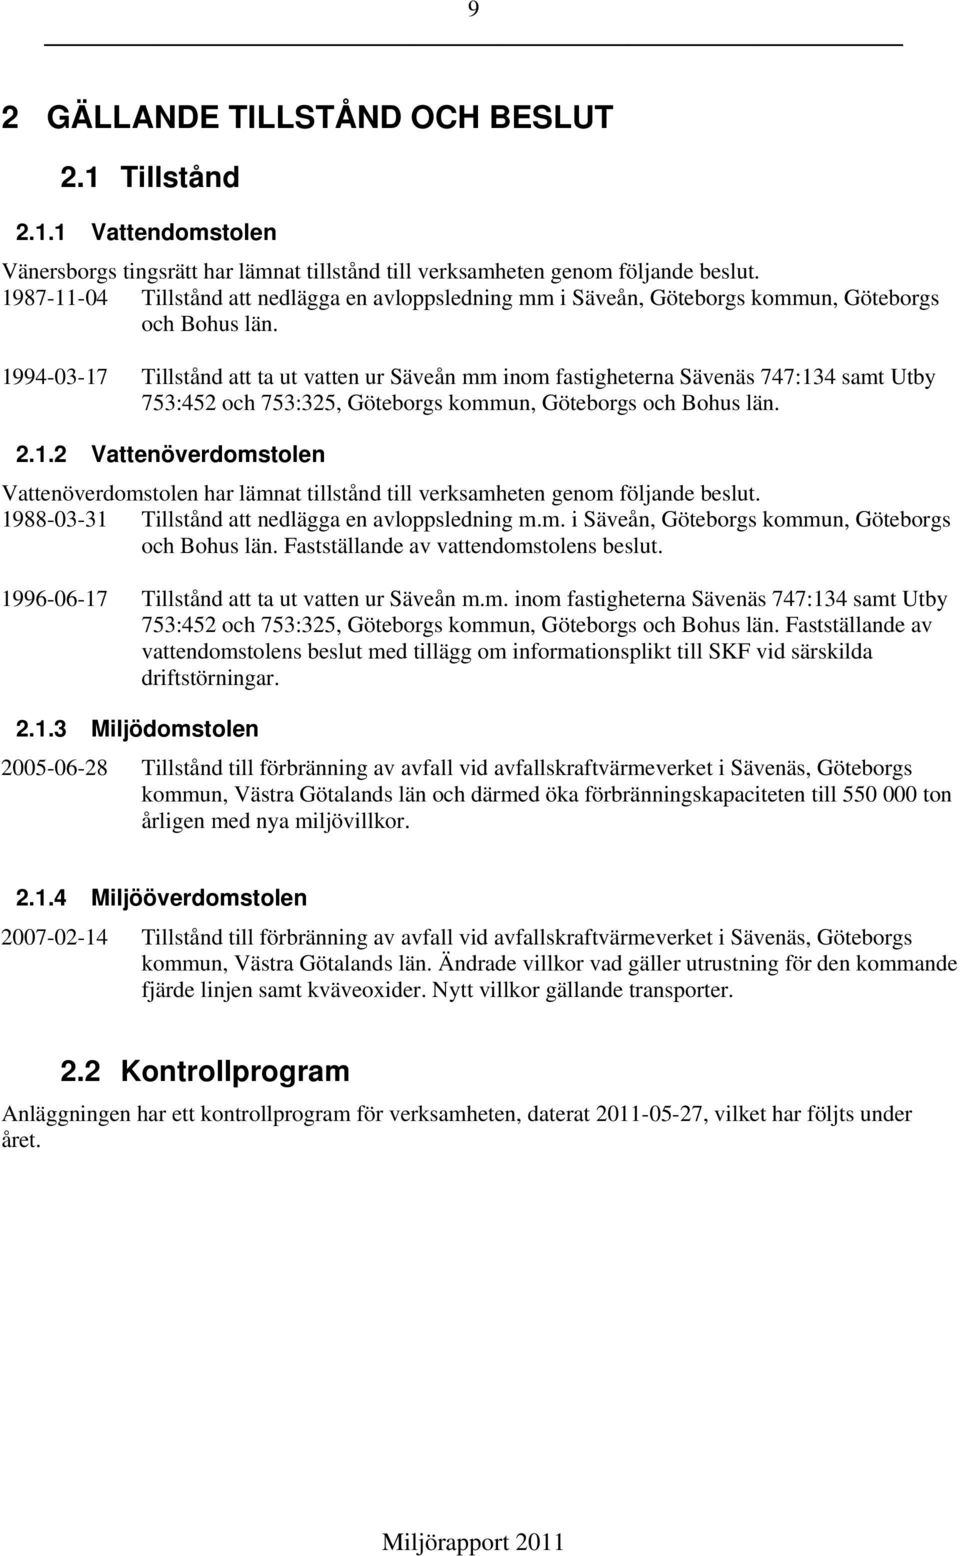 1994-03-17 Tillstånd att ta ut vatten ur Säveån mm inom fastigheterna Sävenäs 747:134 samt Utby 753:452 och 753:325, Göteborgs kommun, Göteborgs och Bohus län. 2.1.2 Vattenöverdomstolen Vattenöverdomstolen har lämnat tillstånd till verksamheten genom följande beslut.